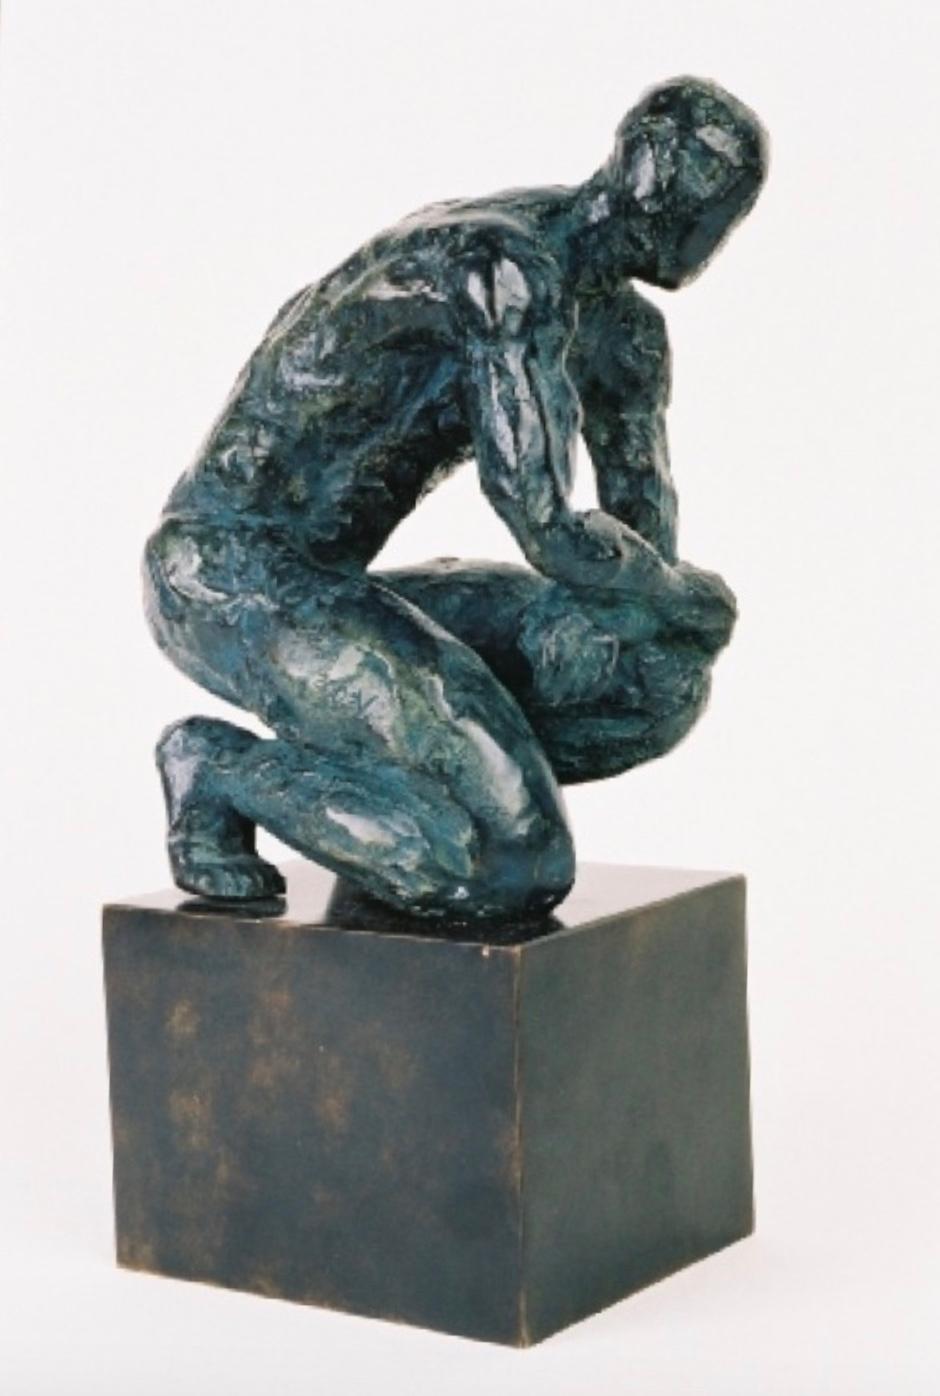 Ludo est une sculpture en bronze de l'artiste contemporain français Yann Guillon, dont les dimensions sont de 25 × 20 × 15 cm (9,8 × 7,9 × 5,9 in).  
Cette sculpture est signée et numérotée, elle fait partie d'une édition limitée à 8 exemplaires + 4